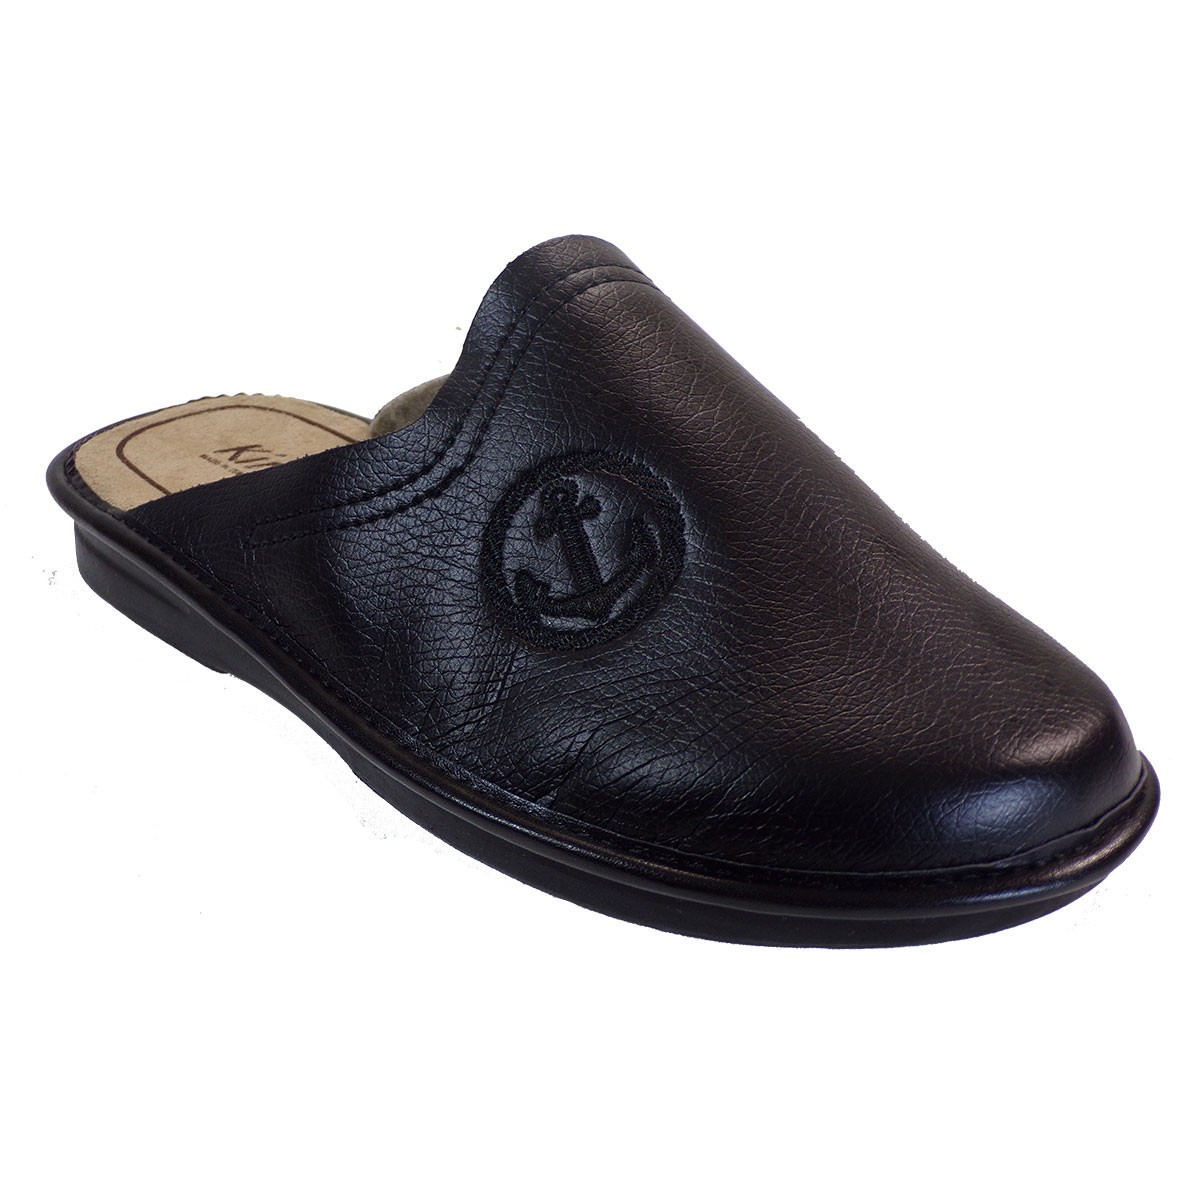 Βagiota Shoes Ανδρικές Παντόφλες 00520 Μαύρο